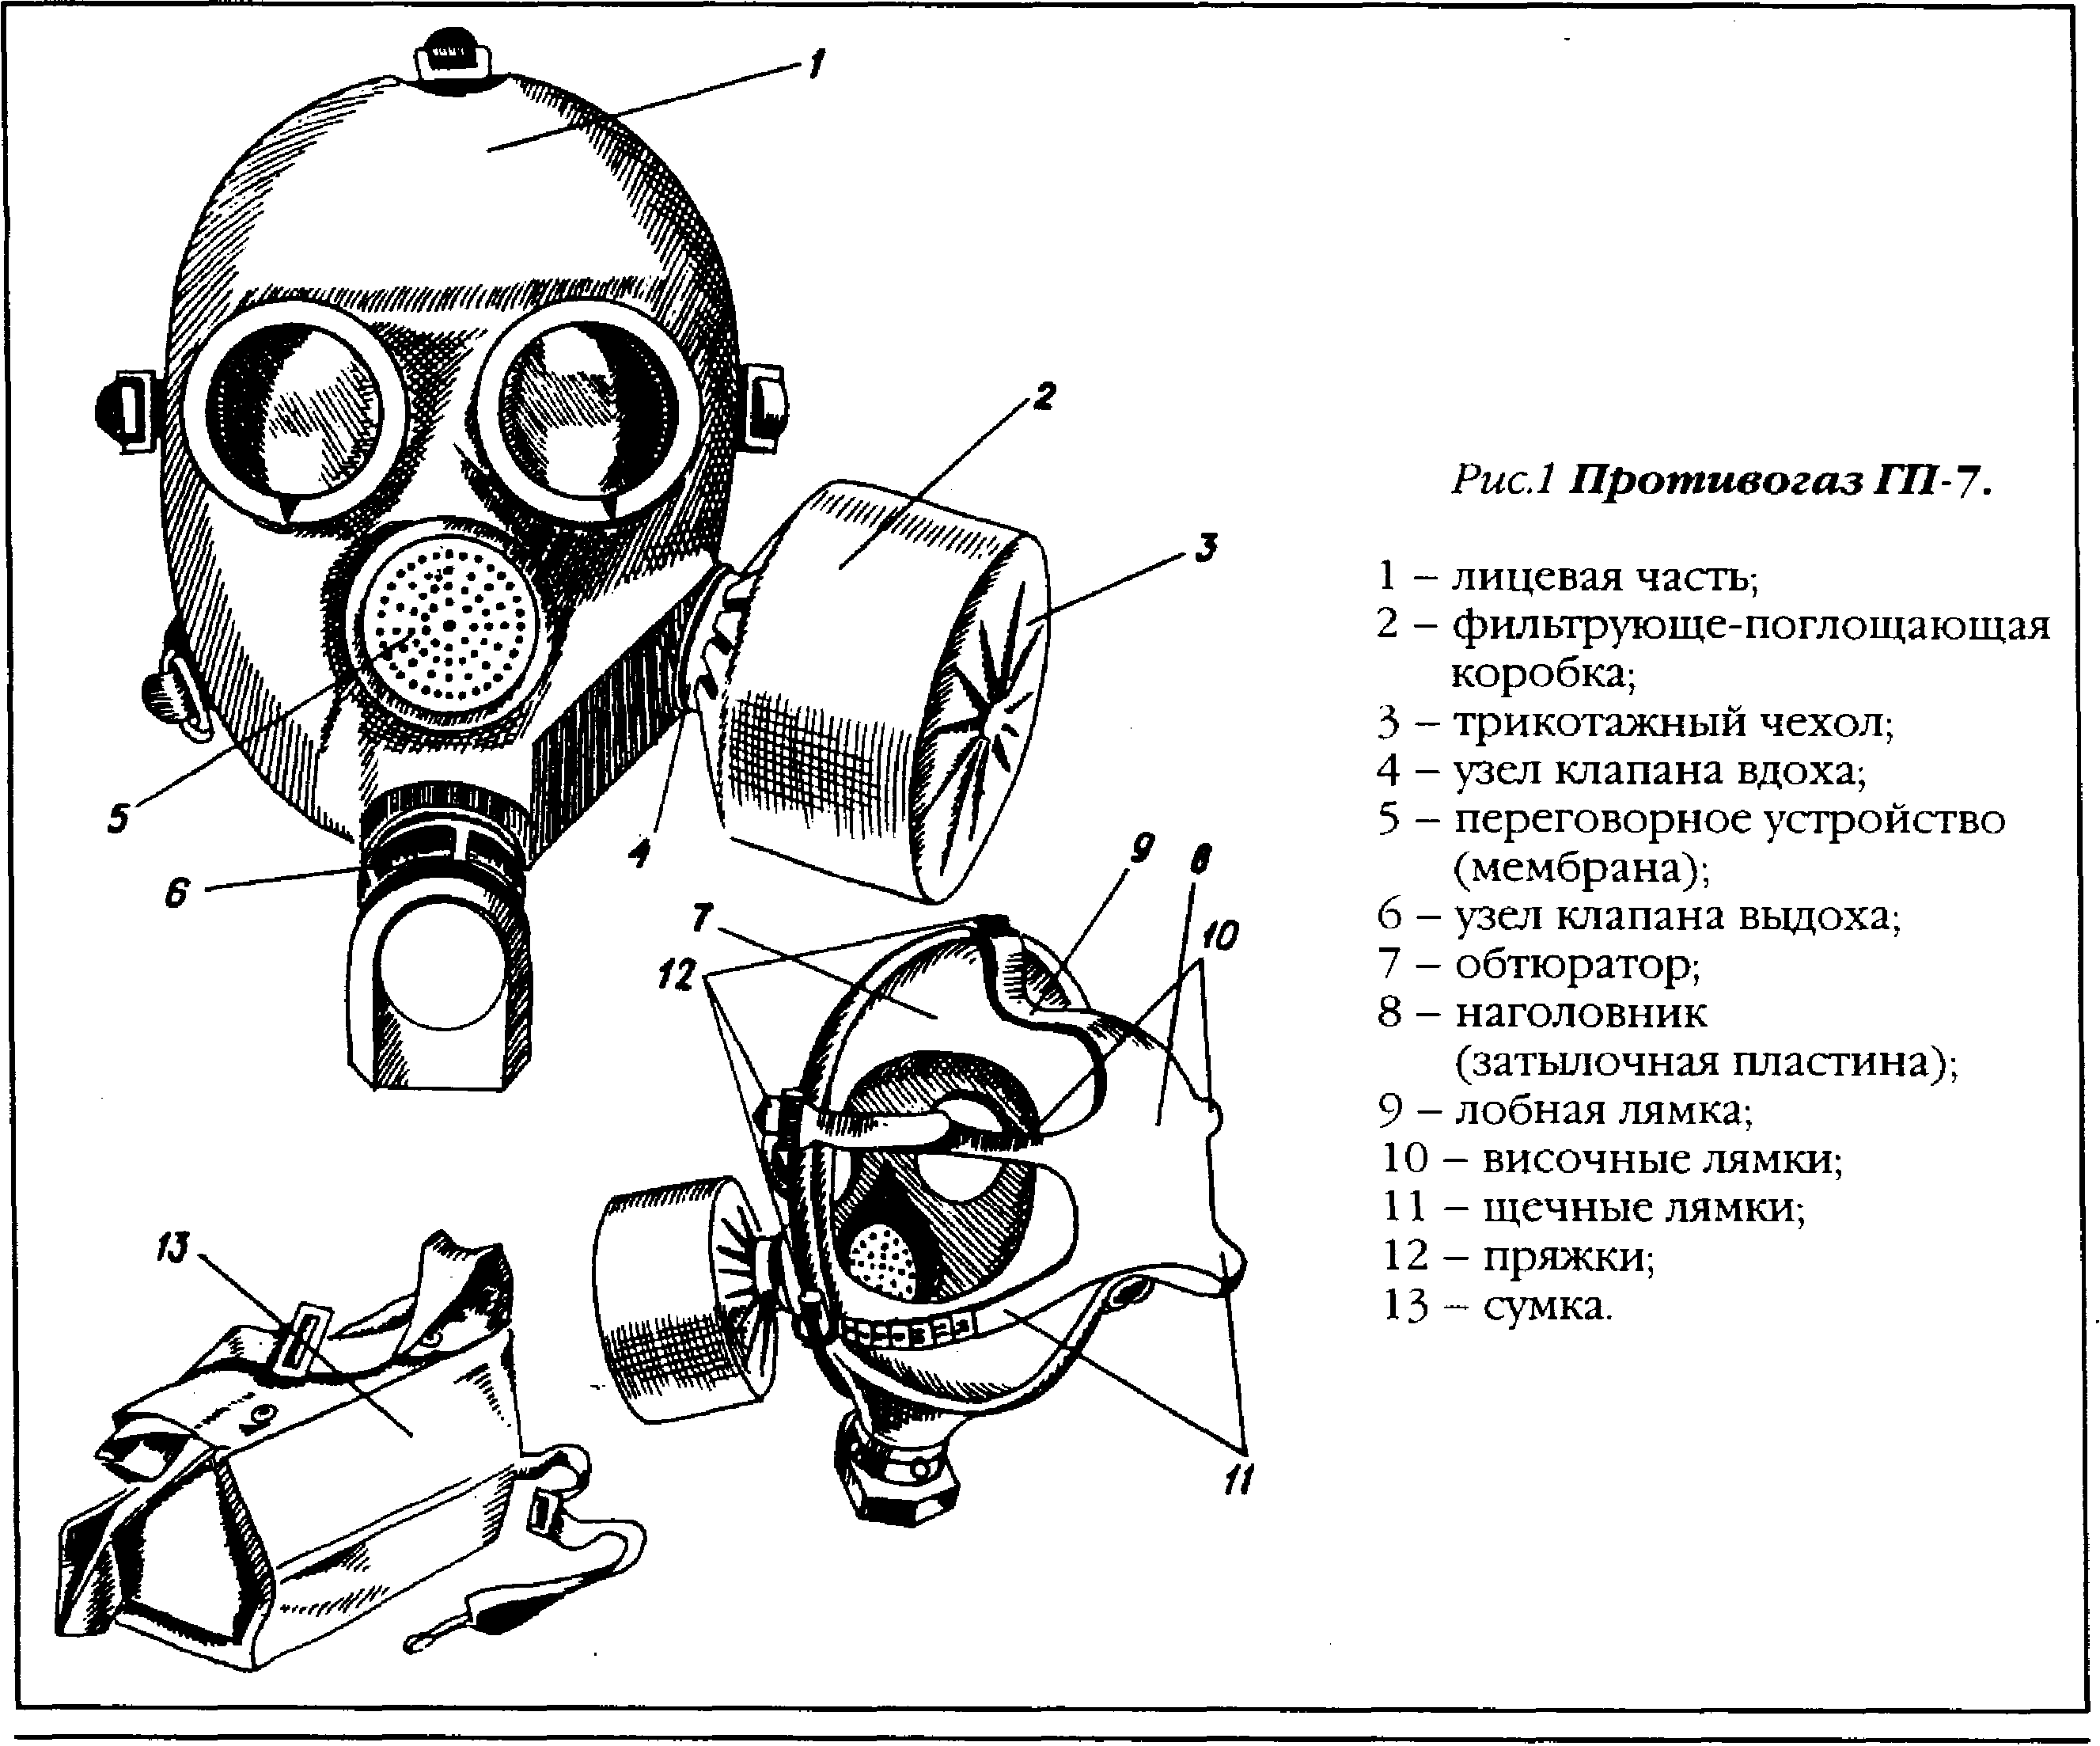 Противогаз гп-7: характеристики, инструкция, описание